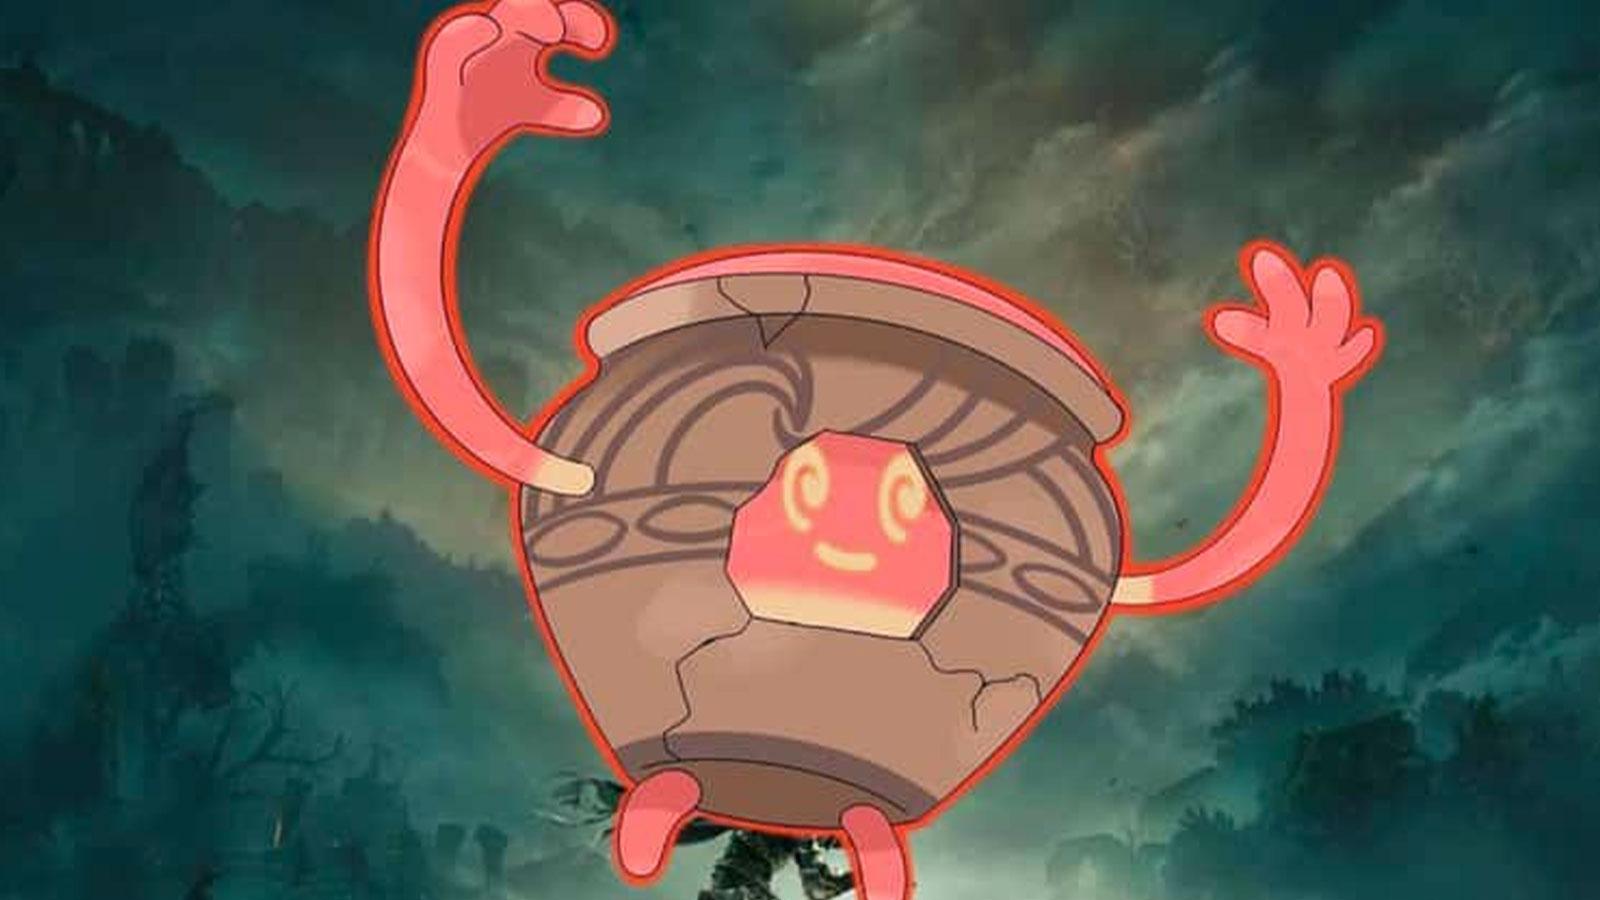 Un Pokémon inventé inspiré de Elden Ring